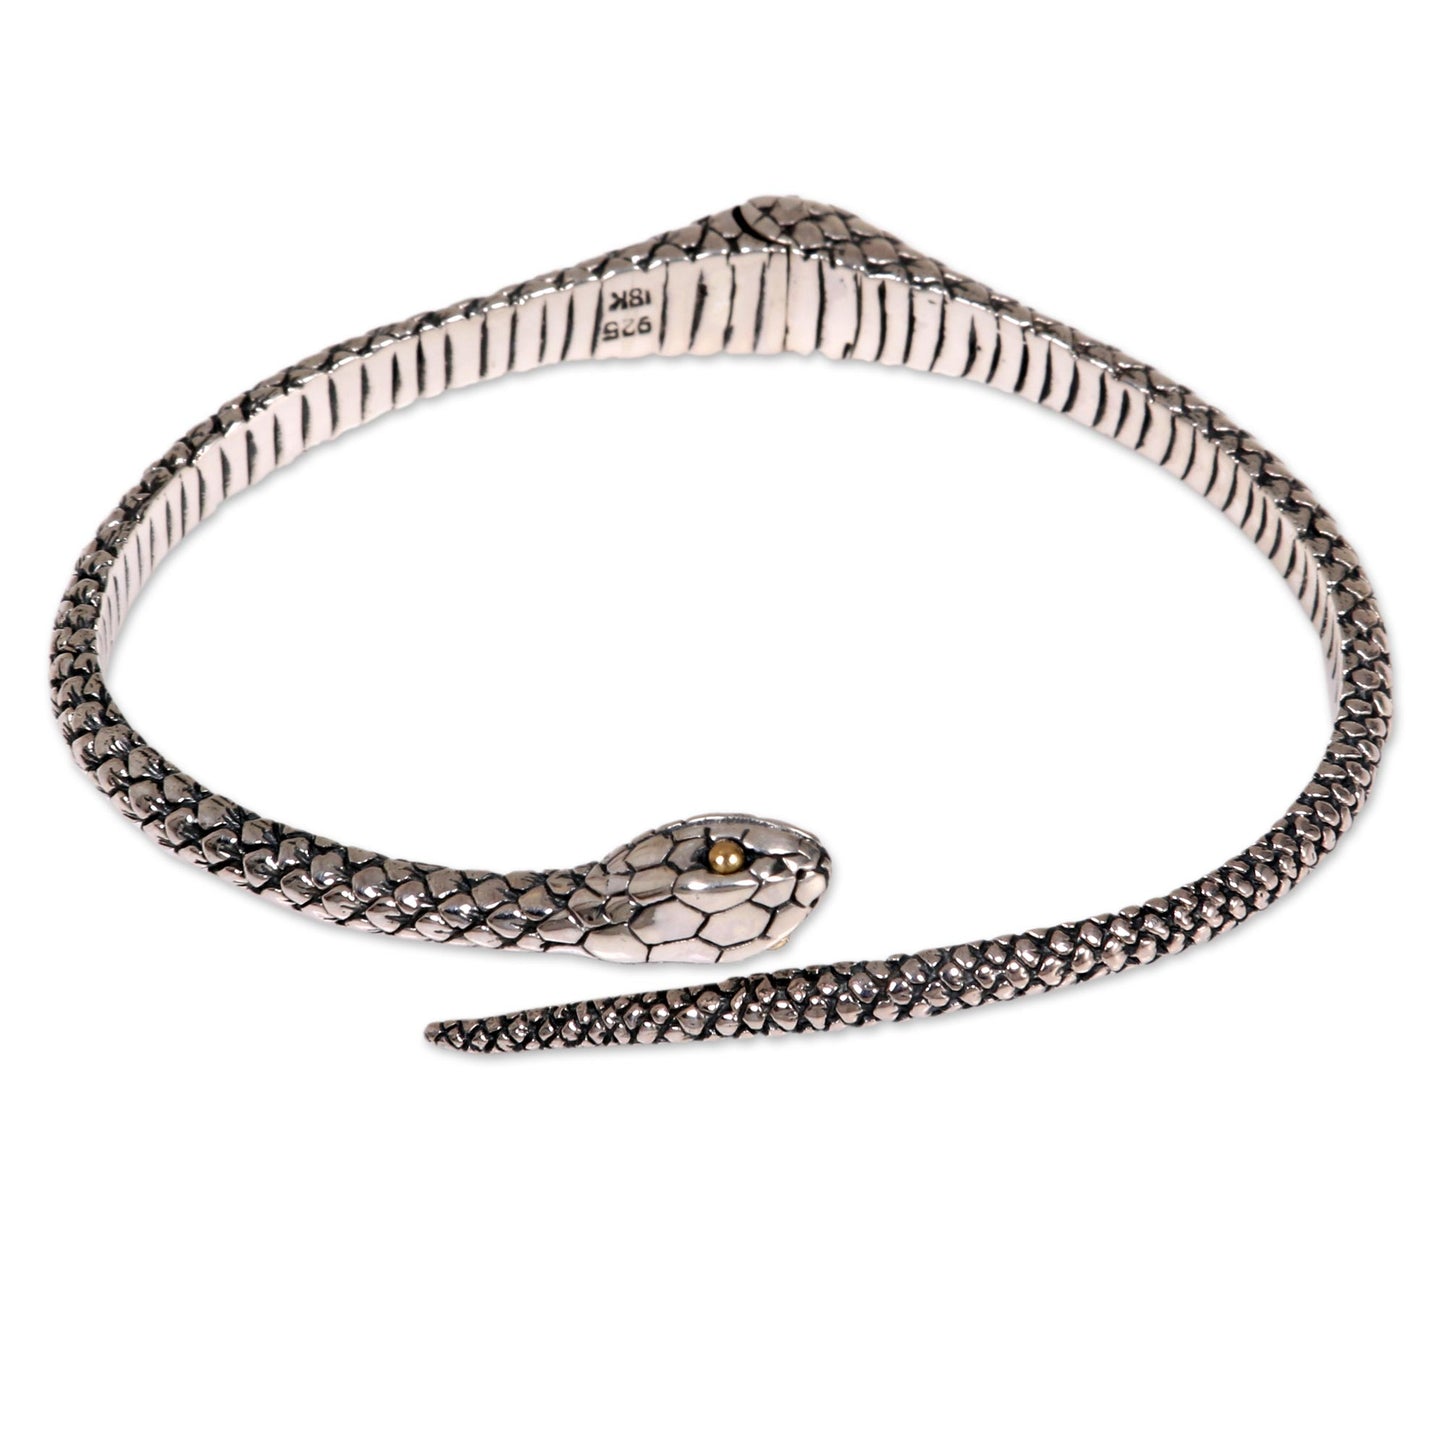 Earth Serpent Silver Cuff Bracelet